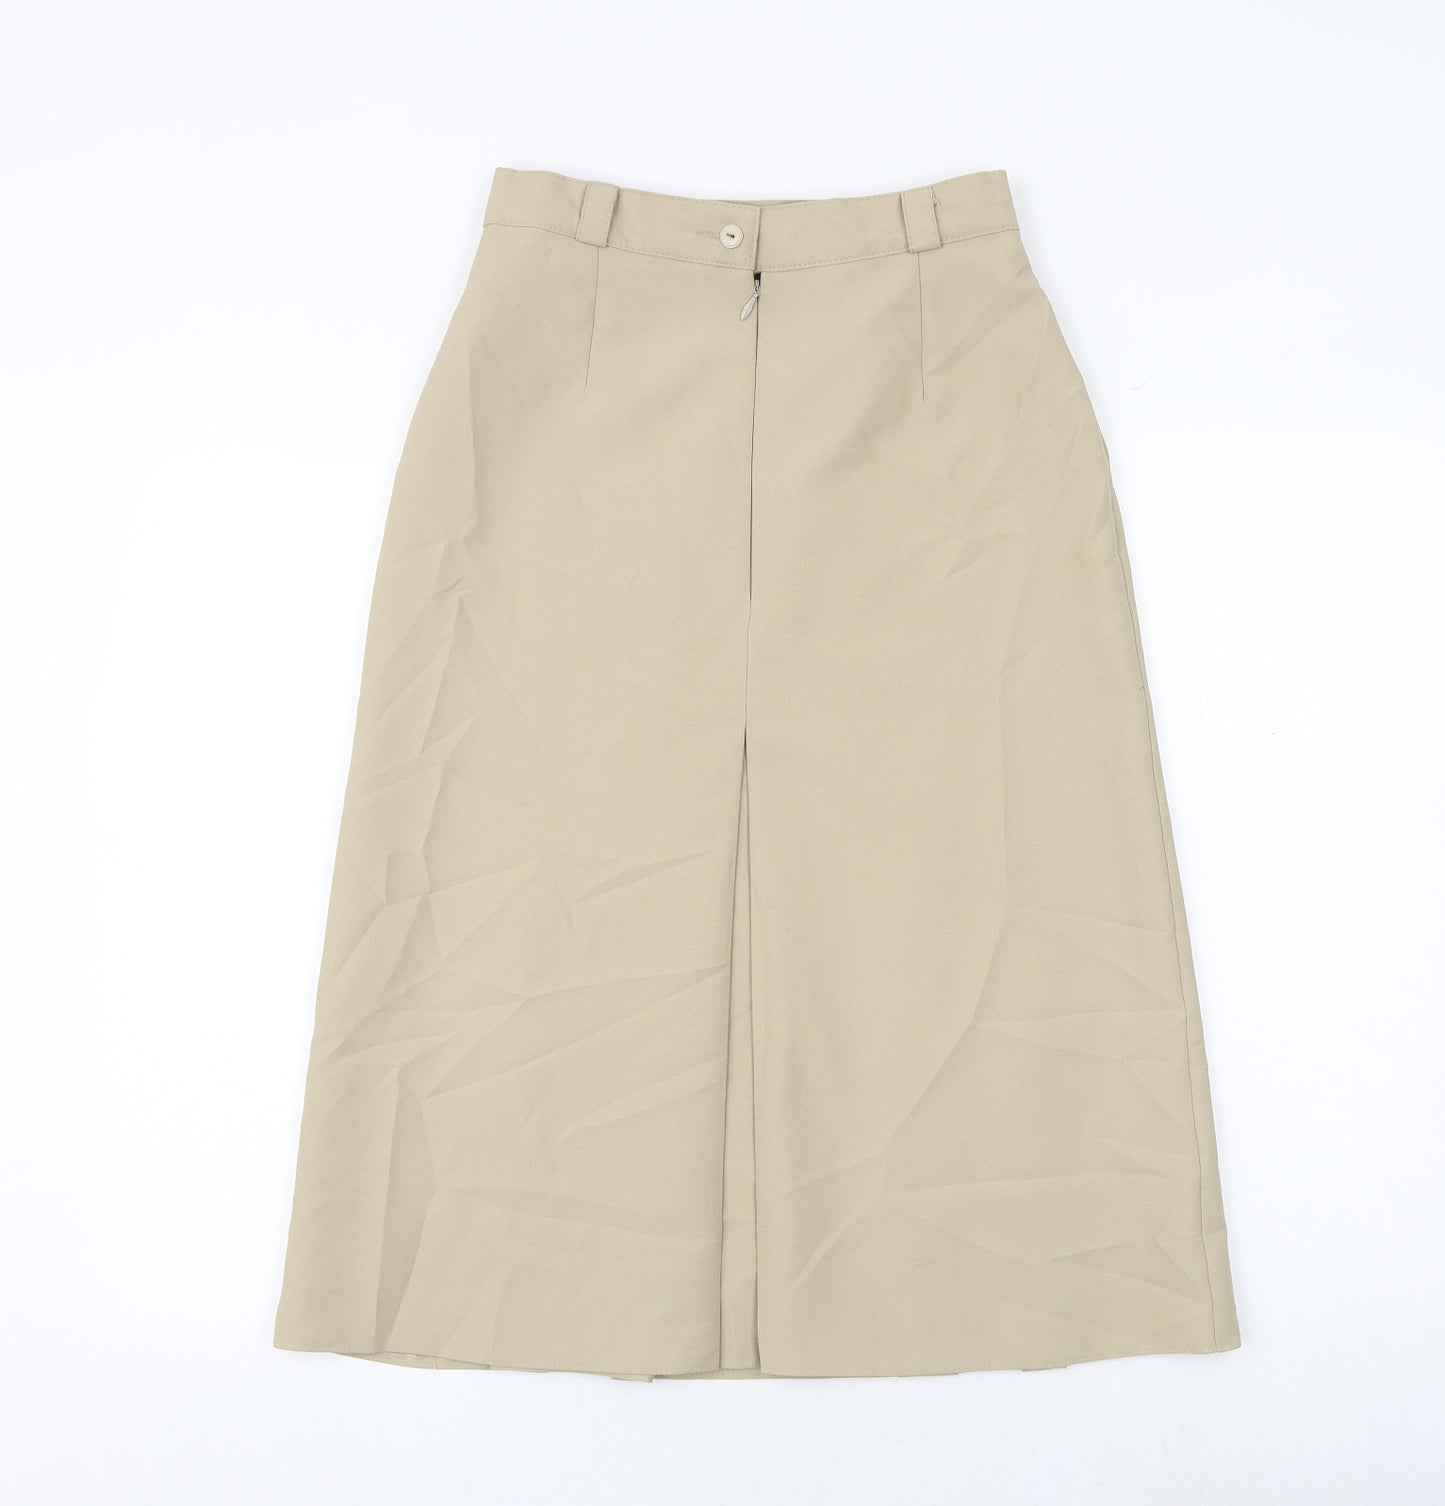 Berkertex Womens Brown Polyester A-Line Skirt Size 12 Zip